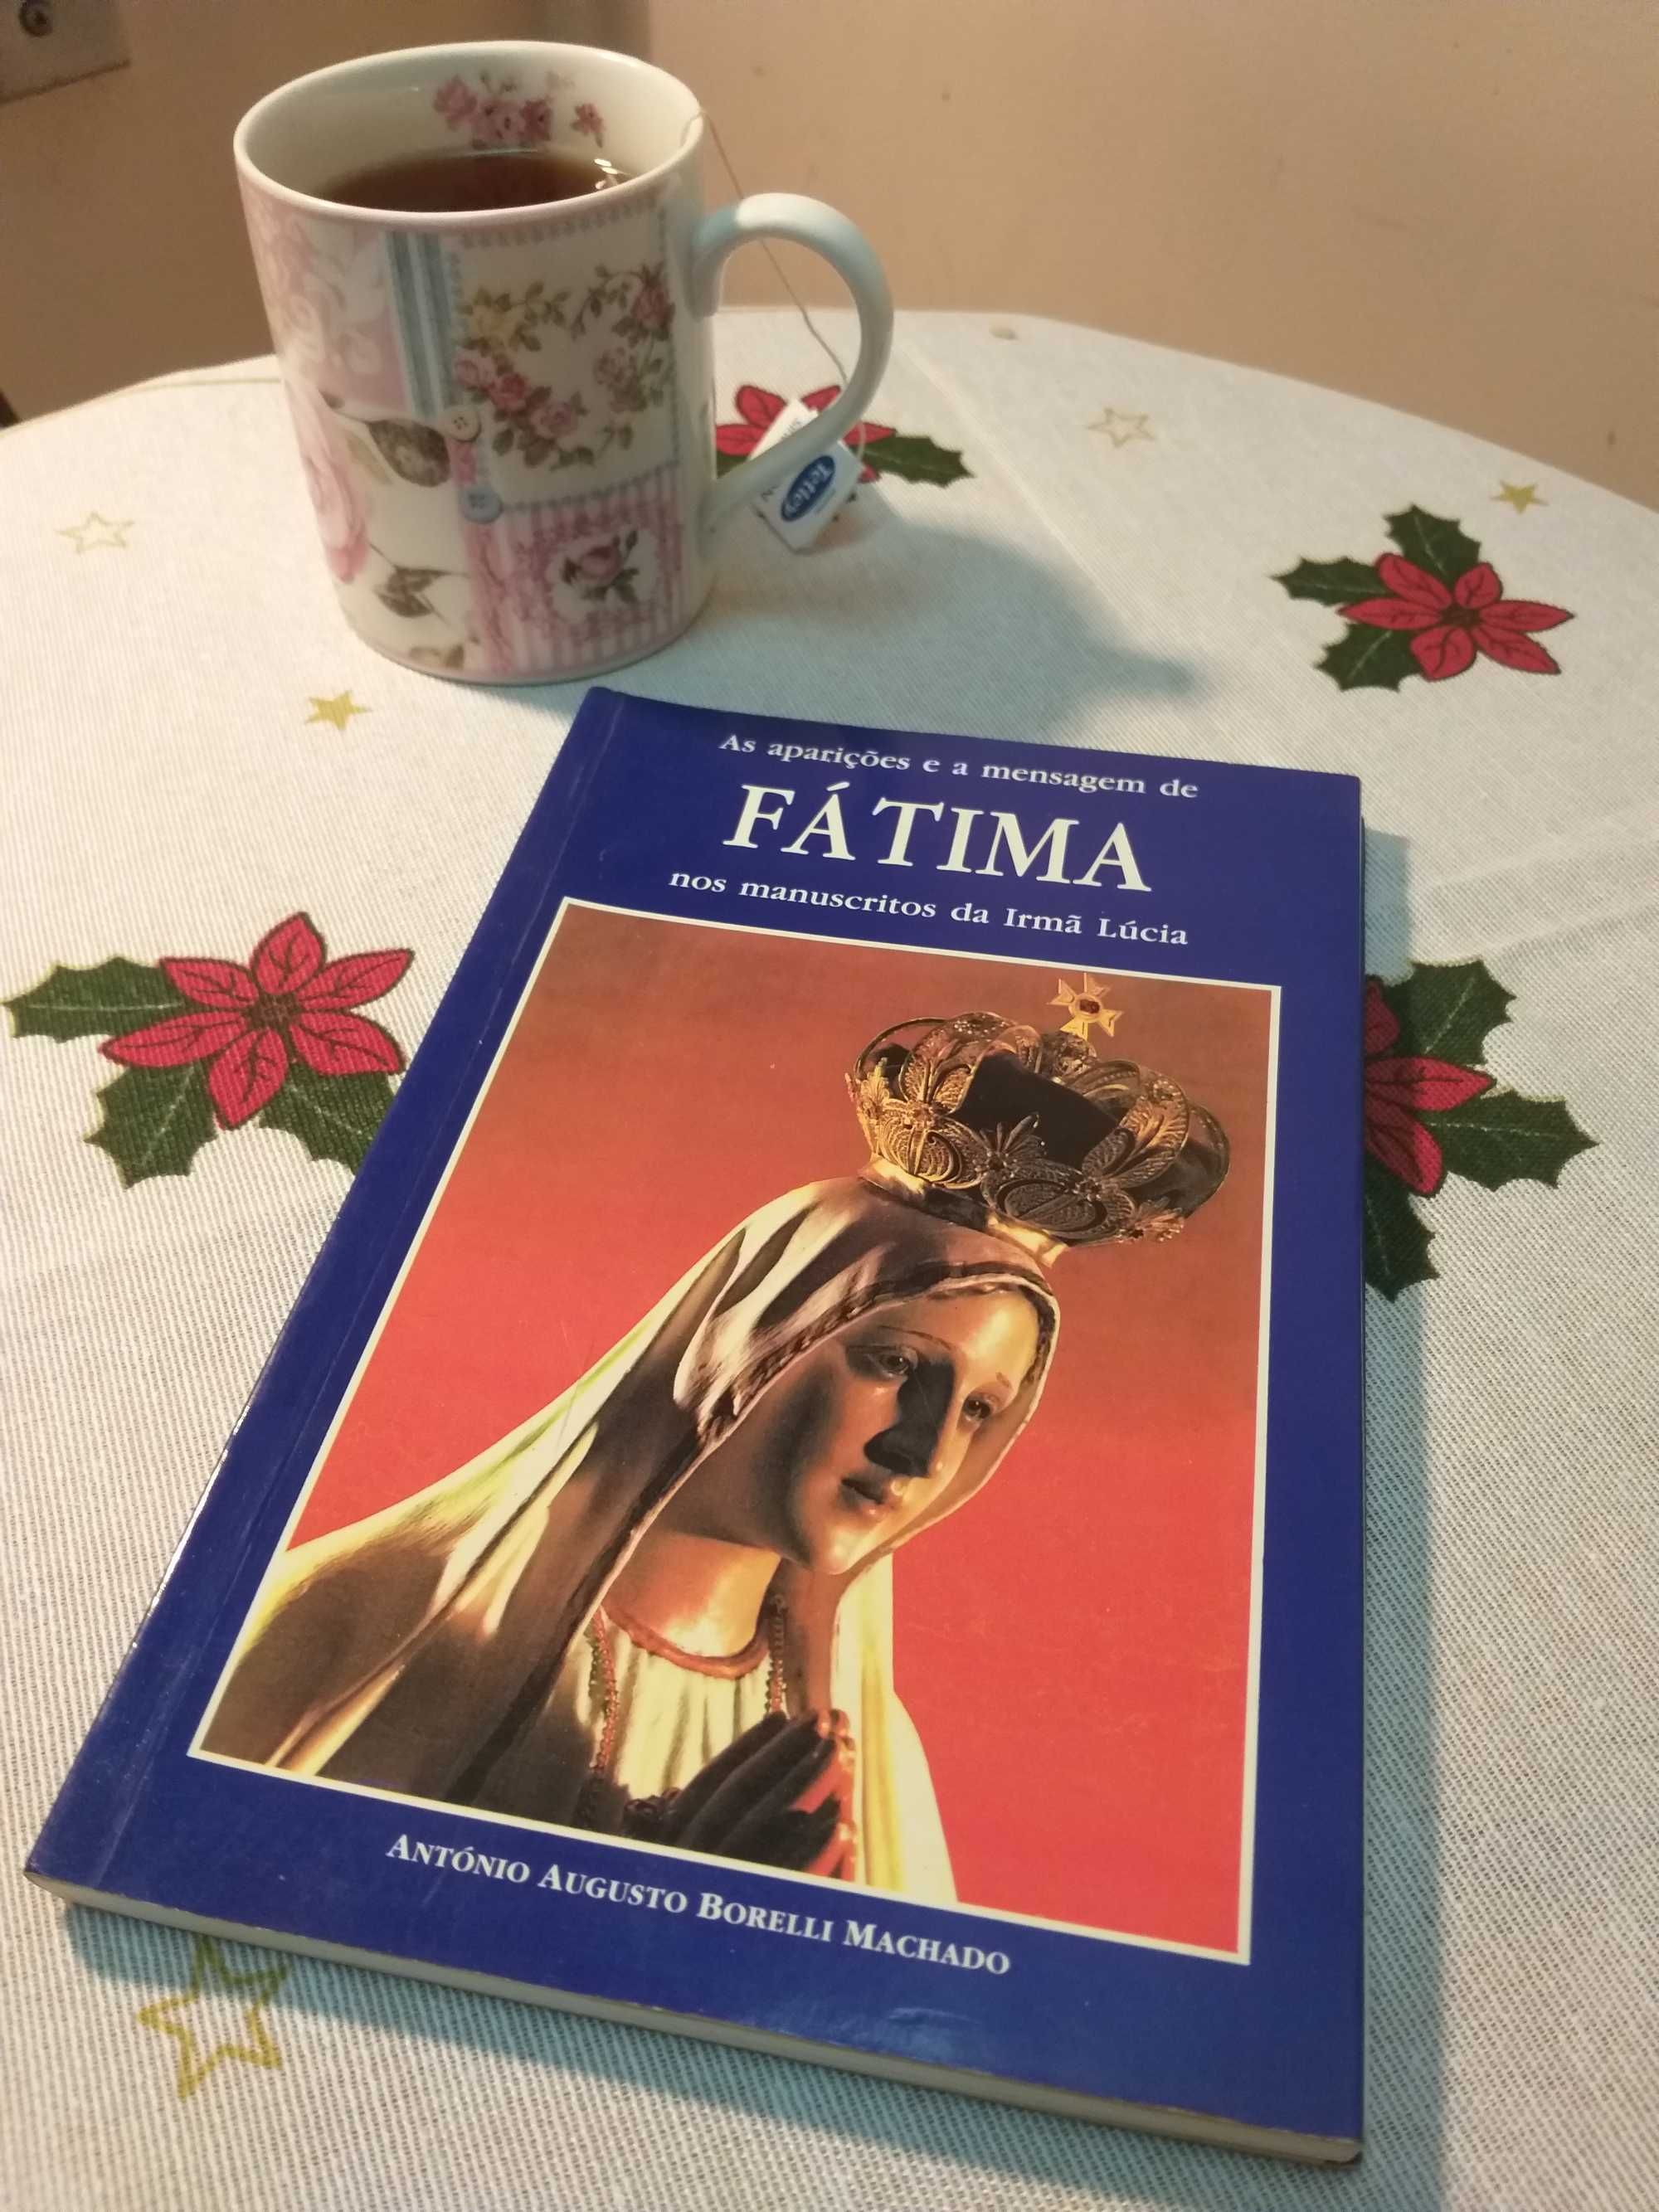 "As aparições e a mensagem de Fátima nos manuscritos da Irmã Lúcia"